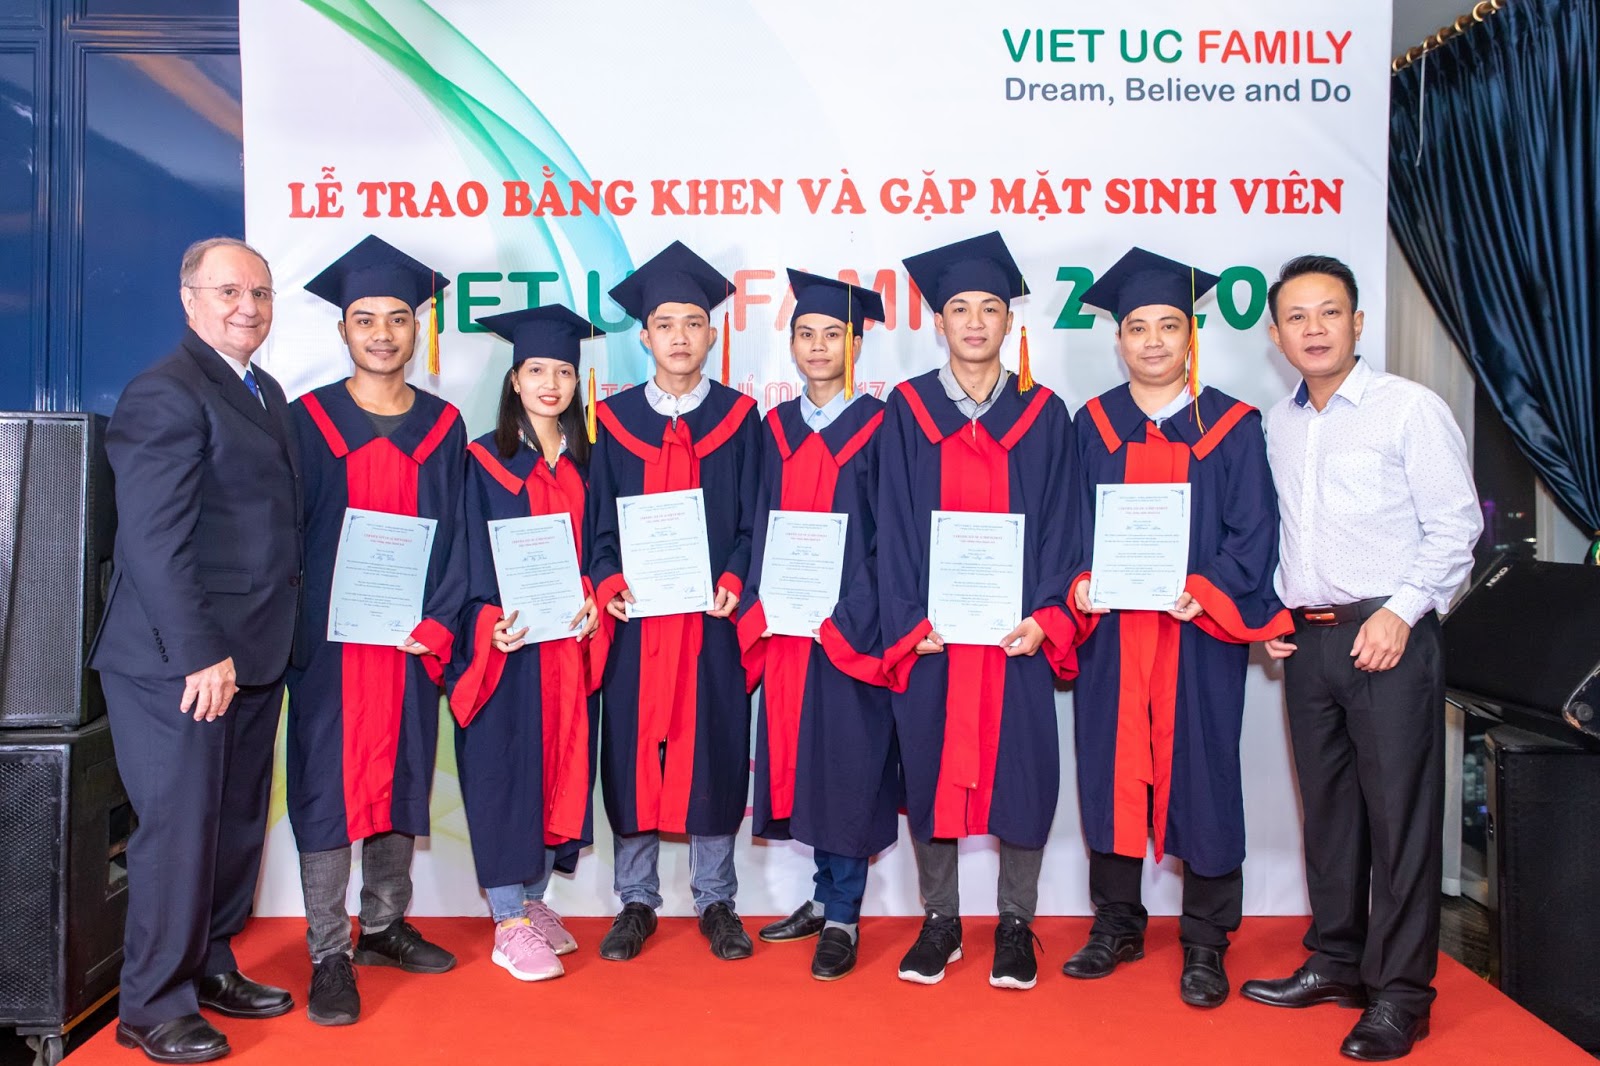 VIET UC FAMILY -- EVENT IN HANOI 2020